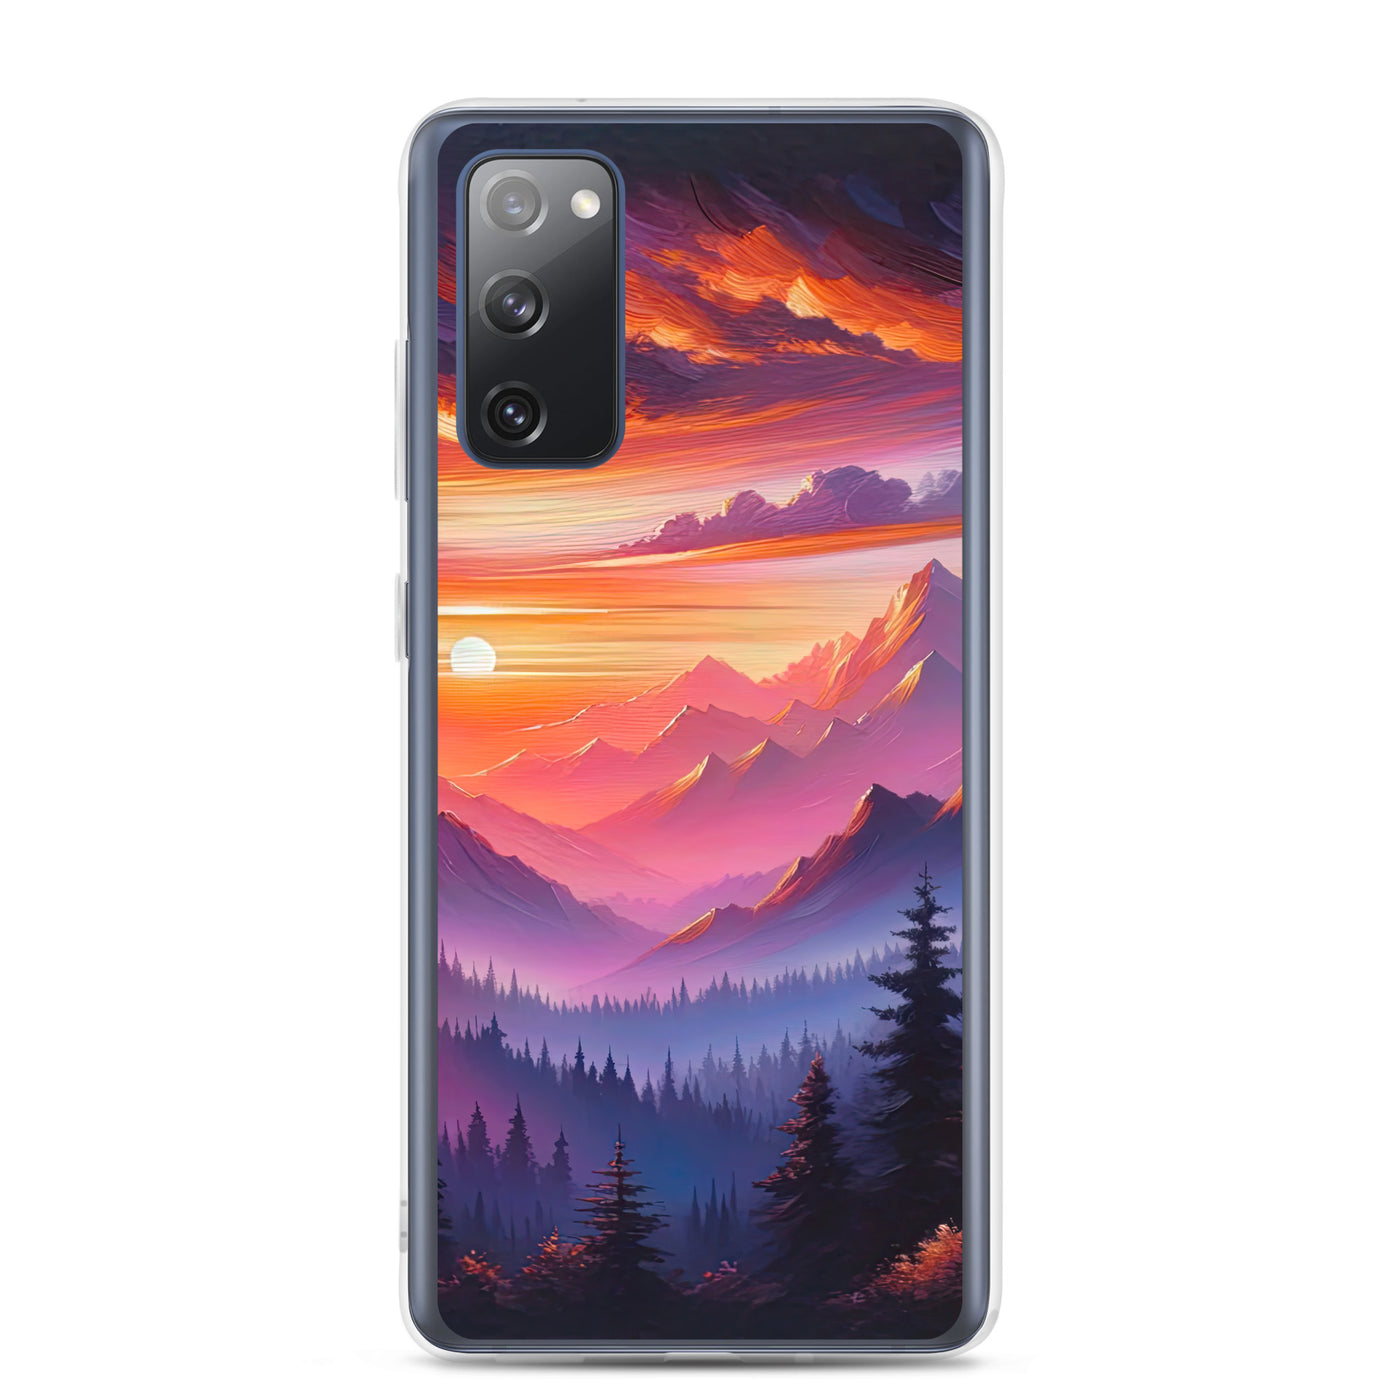 Ölgemälde der Alpenlandschaft im ätherischen Sonnenuntergang, himmlische Farbtöne - Samsung Schutzhülle (durchsichtig) berge xxx yyy zzz